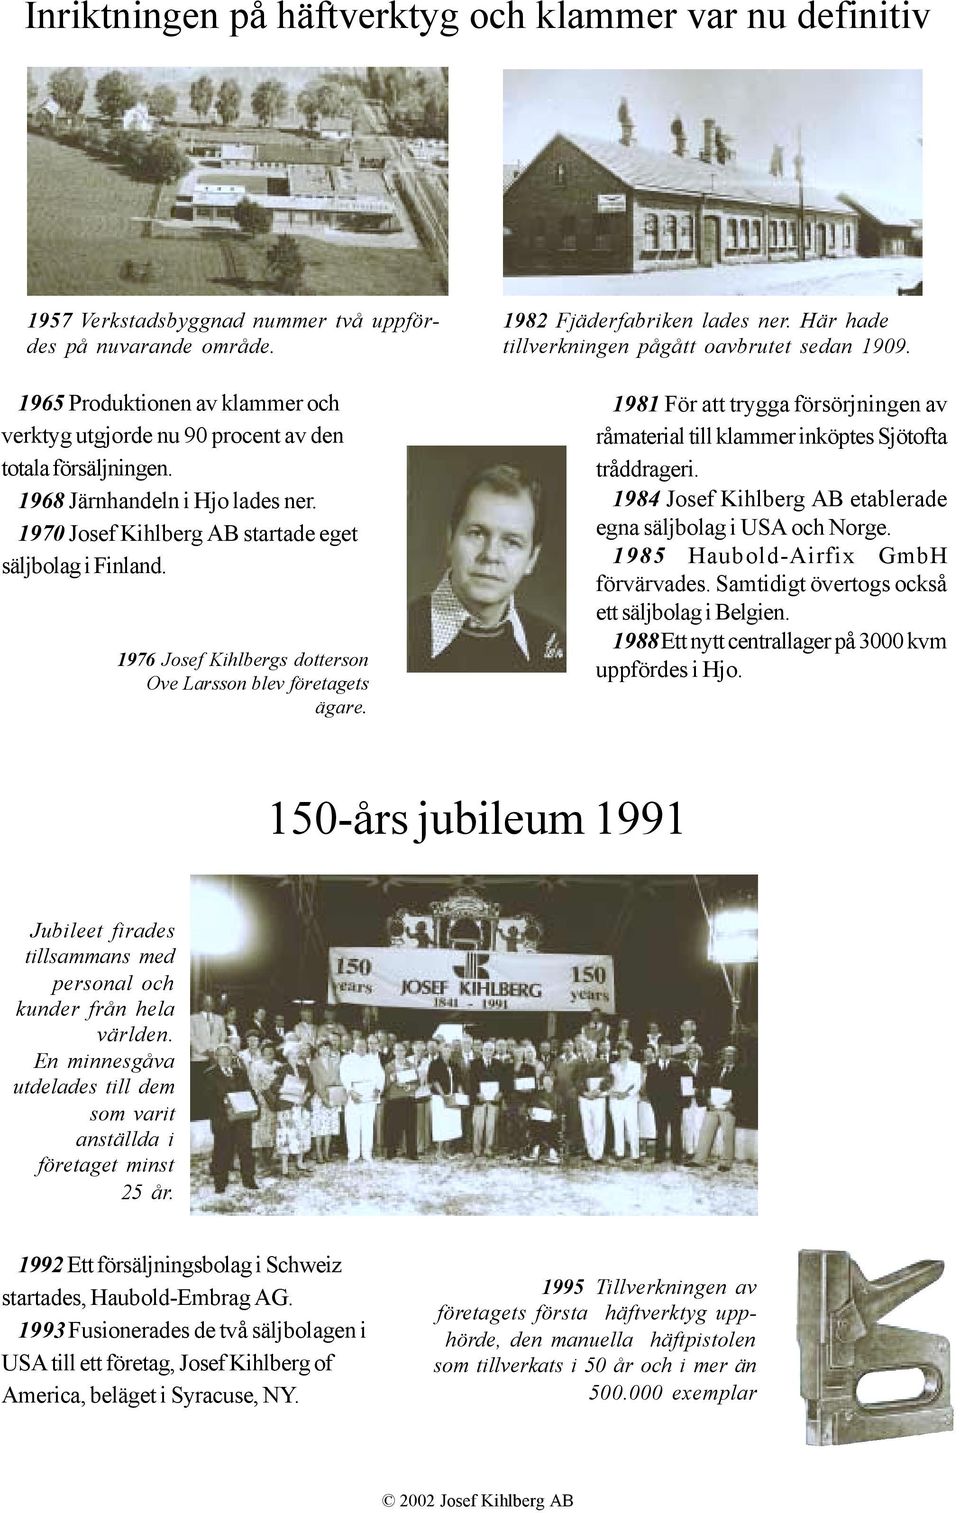 1976 Josef Kihlbergs dotterson Ove Larsson blev företagets ägare. 1982 Fjäderfabriken lades ner. Här hade tillverkningen pågått oavbrutet sedan 1909.